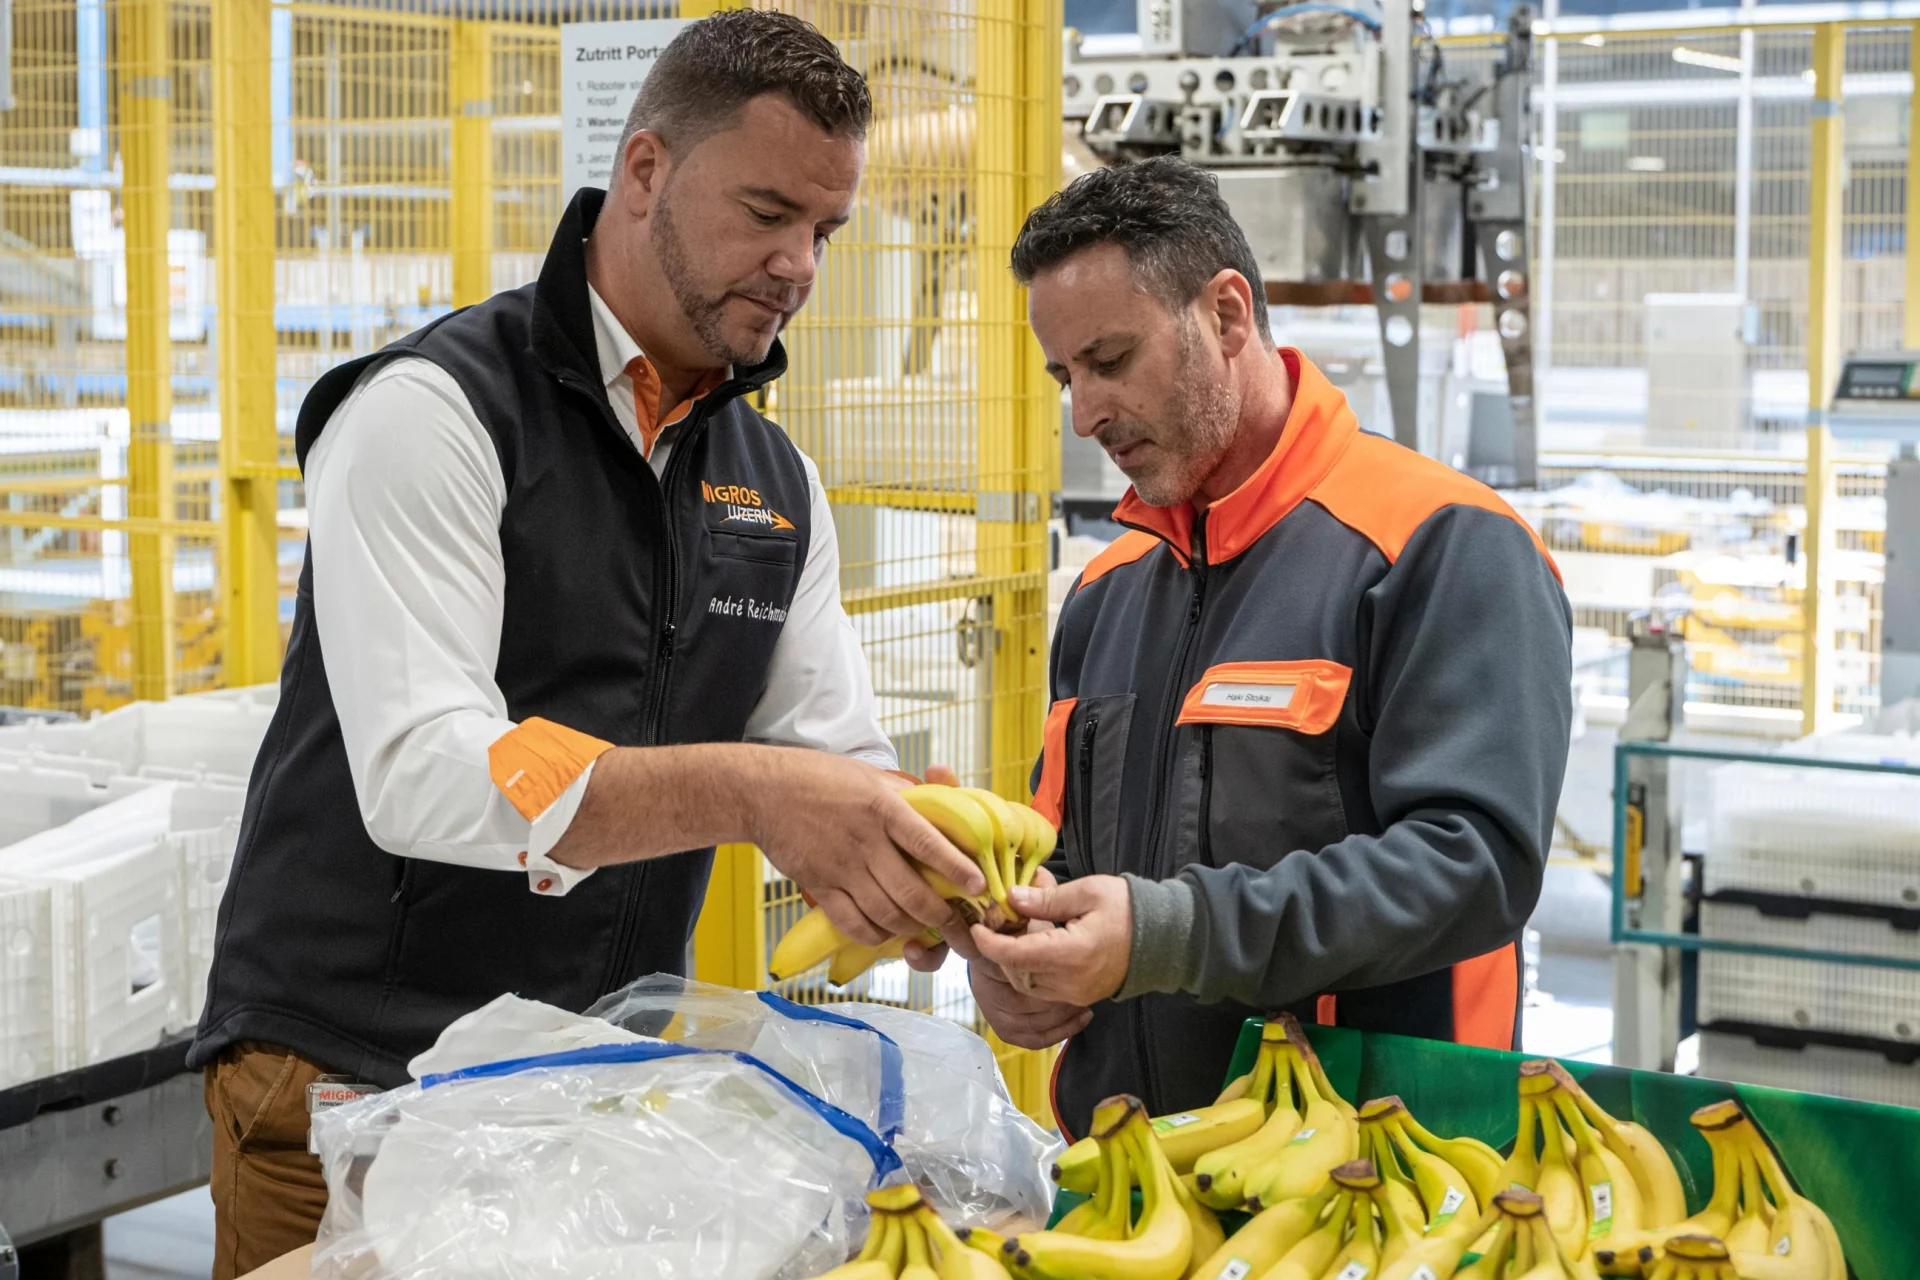  Deux collaborateurs de Migros contrôlent des bananes dans un hall de transformation.